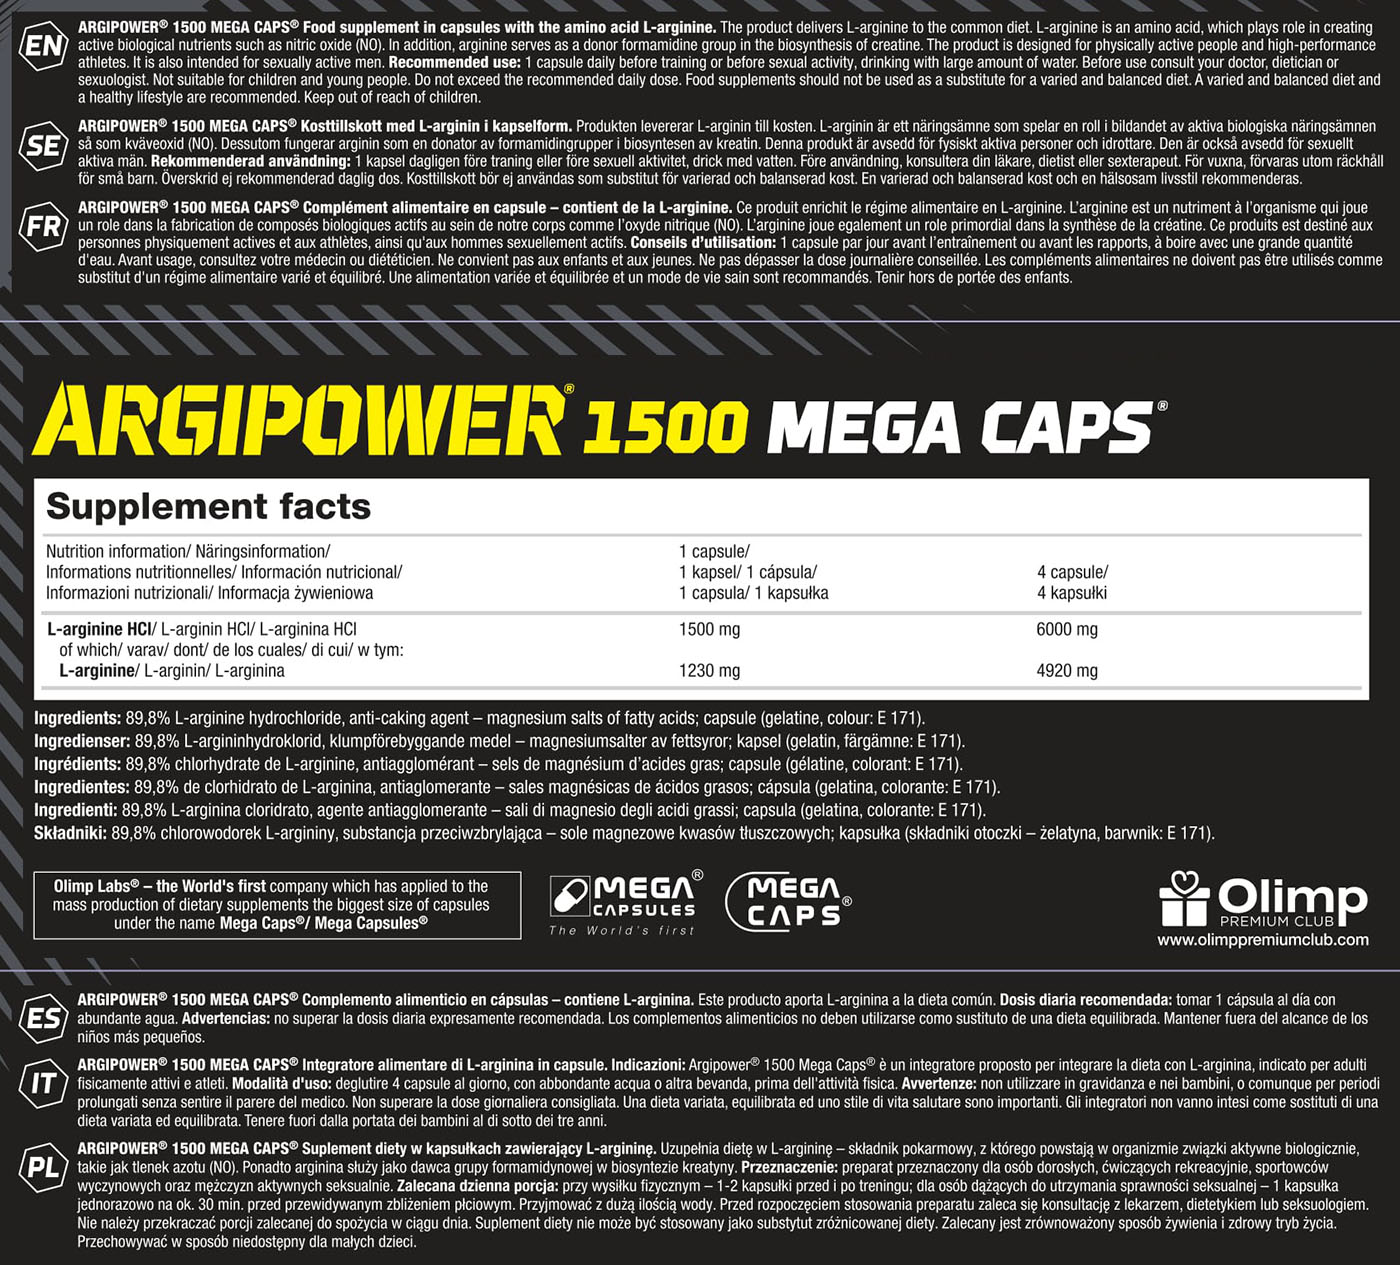 Olimp Argi Power Mega Caps® (120 Caps, 180g)